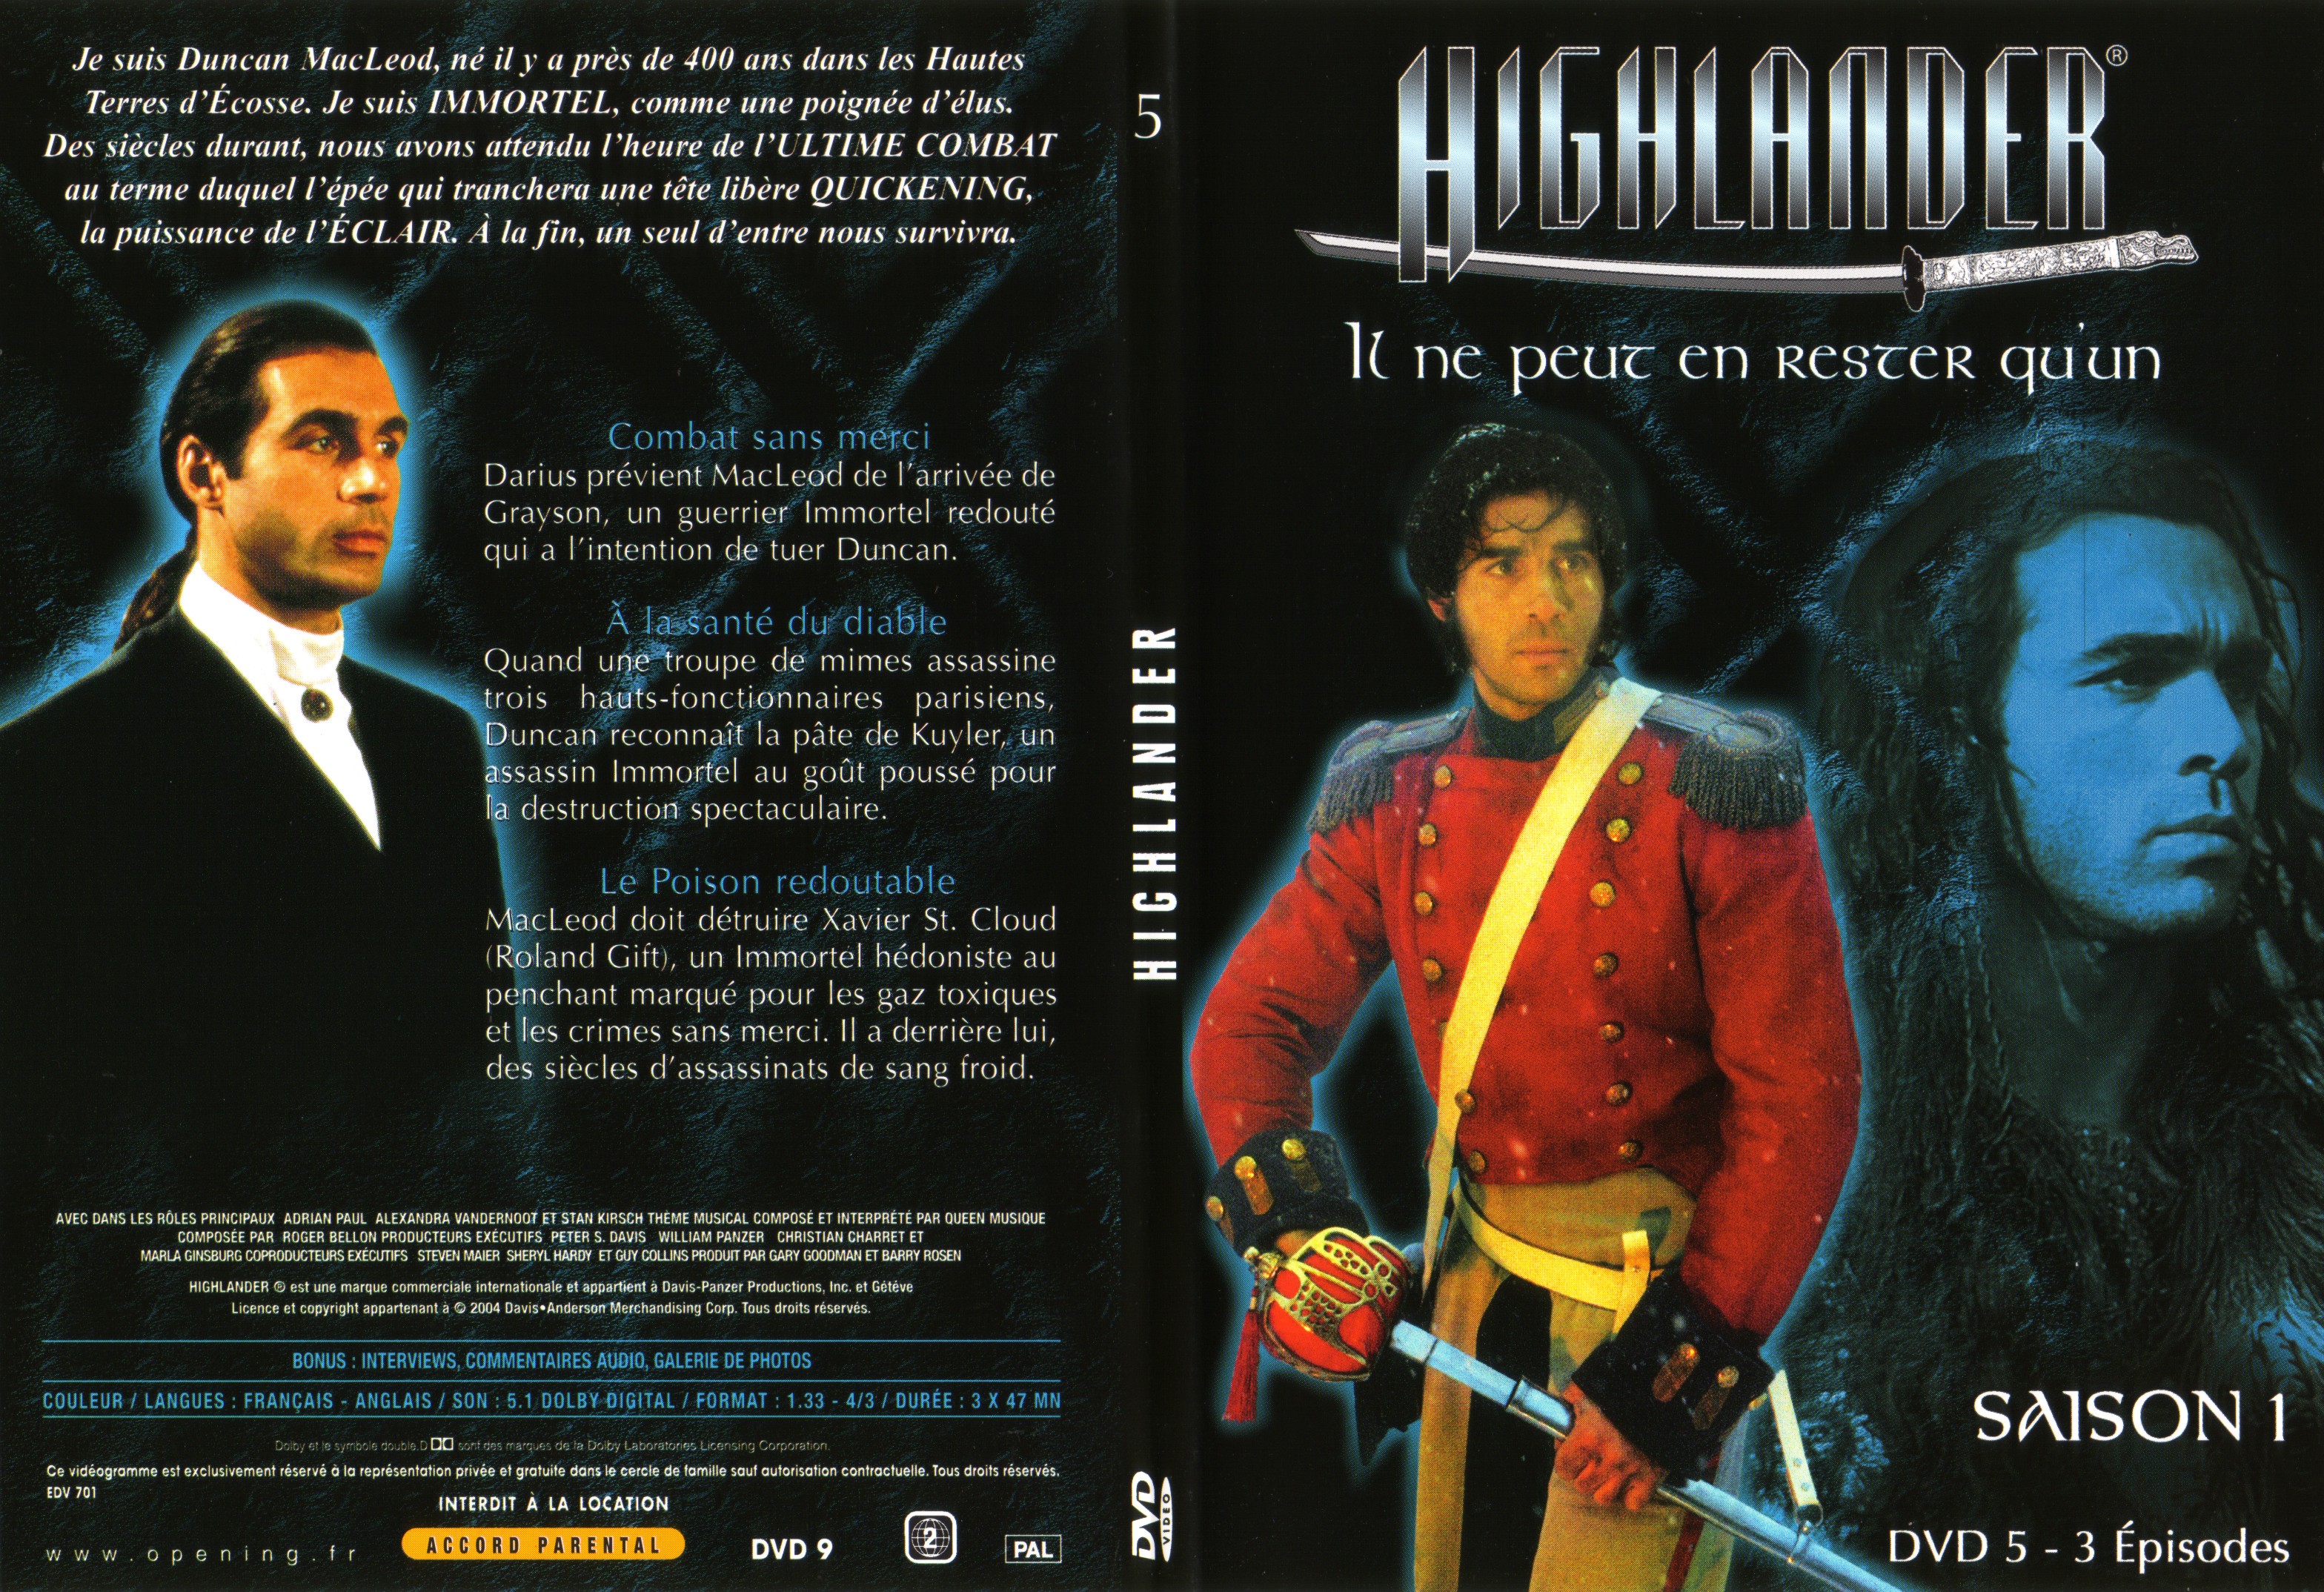 Jaquette DVD Highlander saison 1 DVD 5